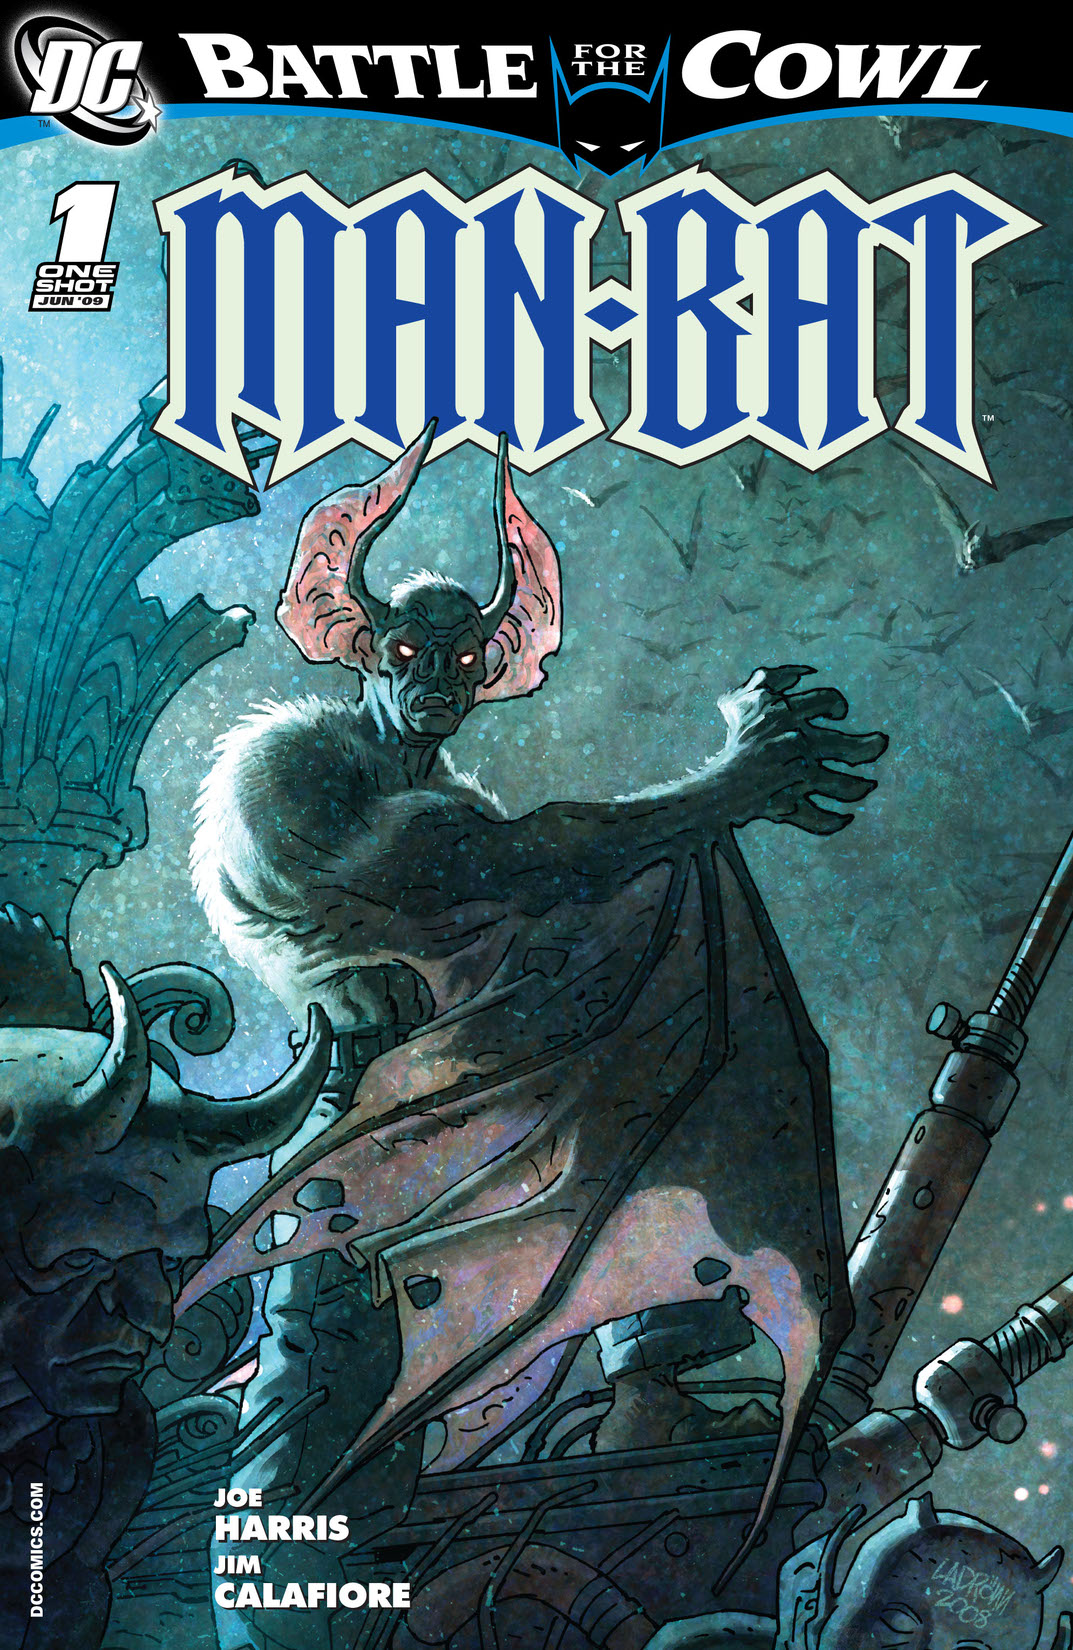 Batman: Battle for the Cowl: Man-Bat #1 preview images